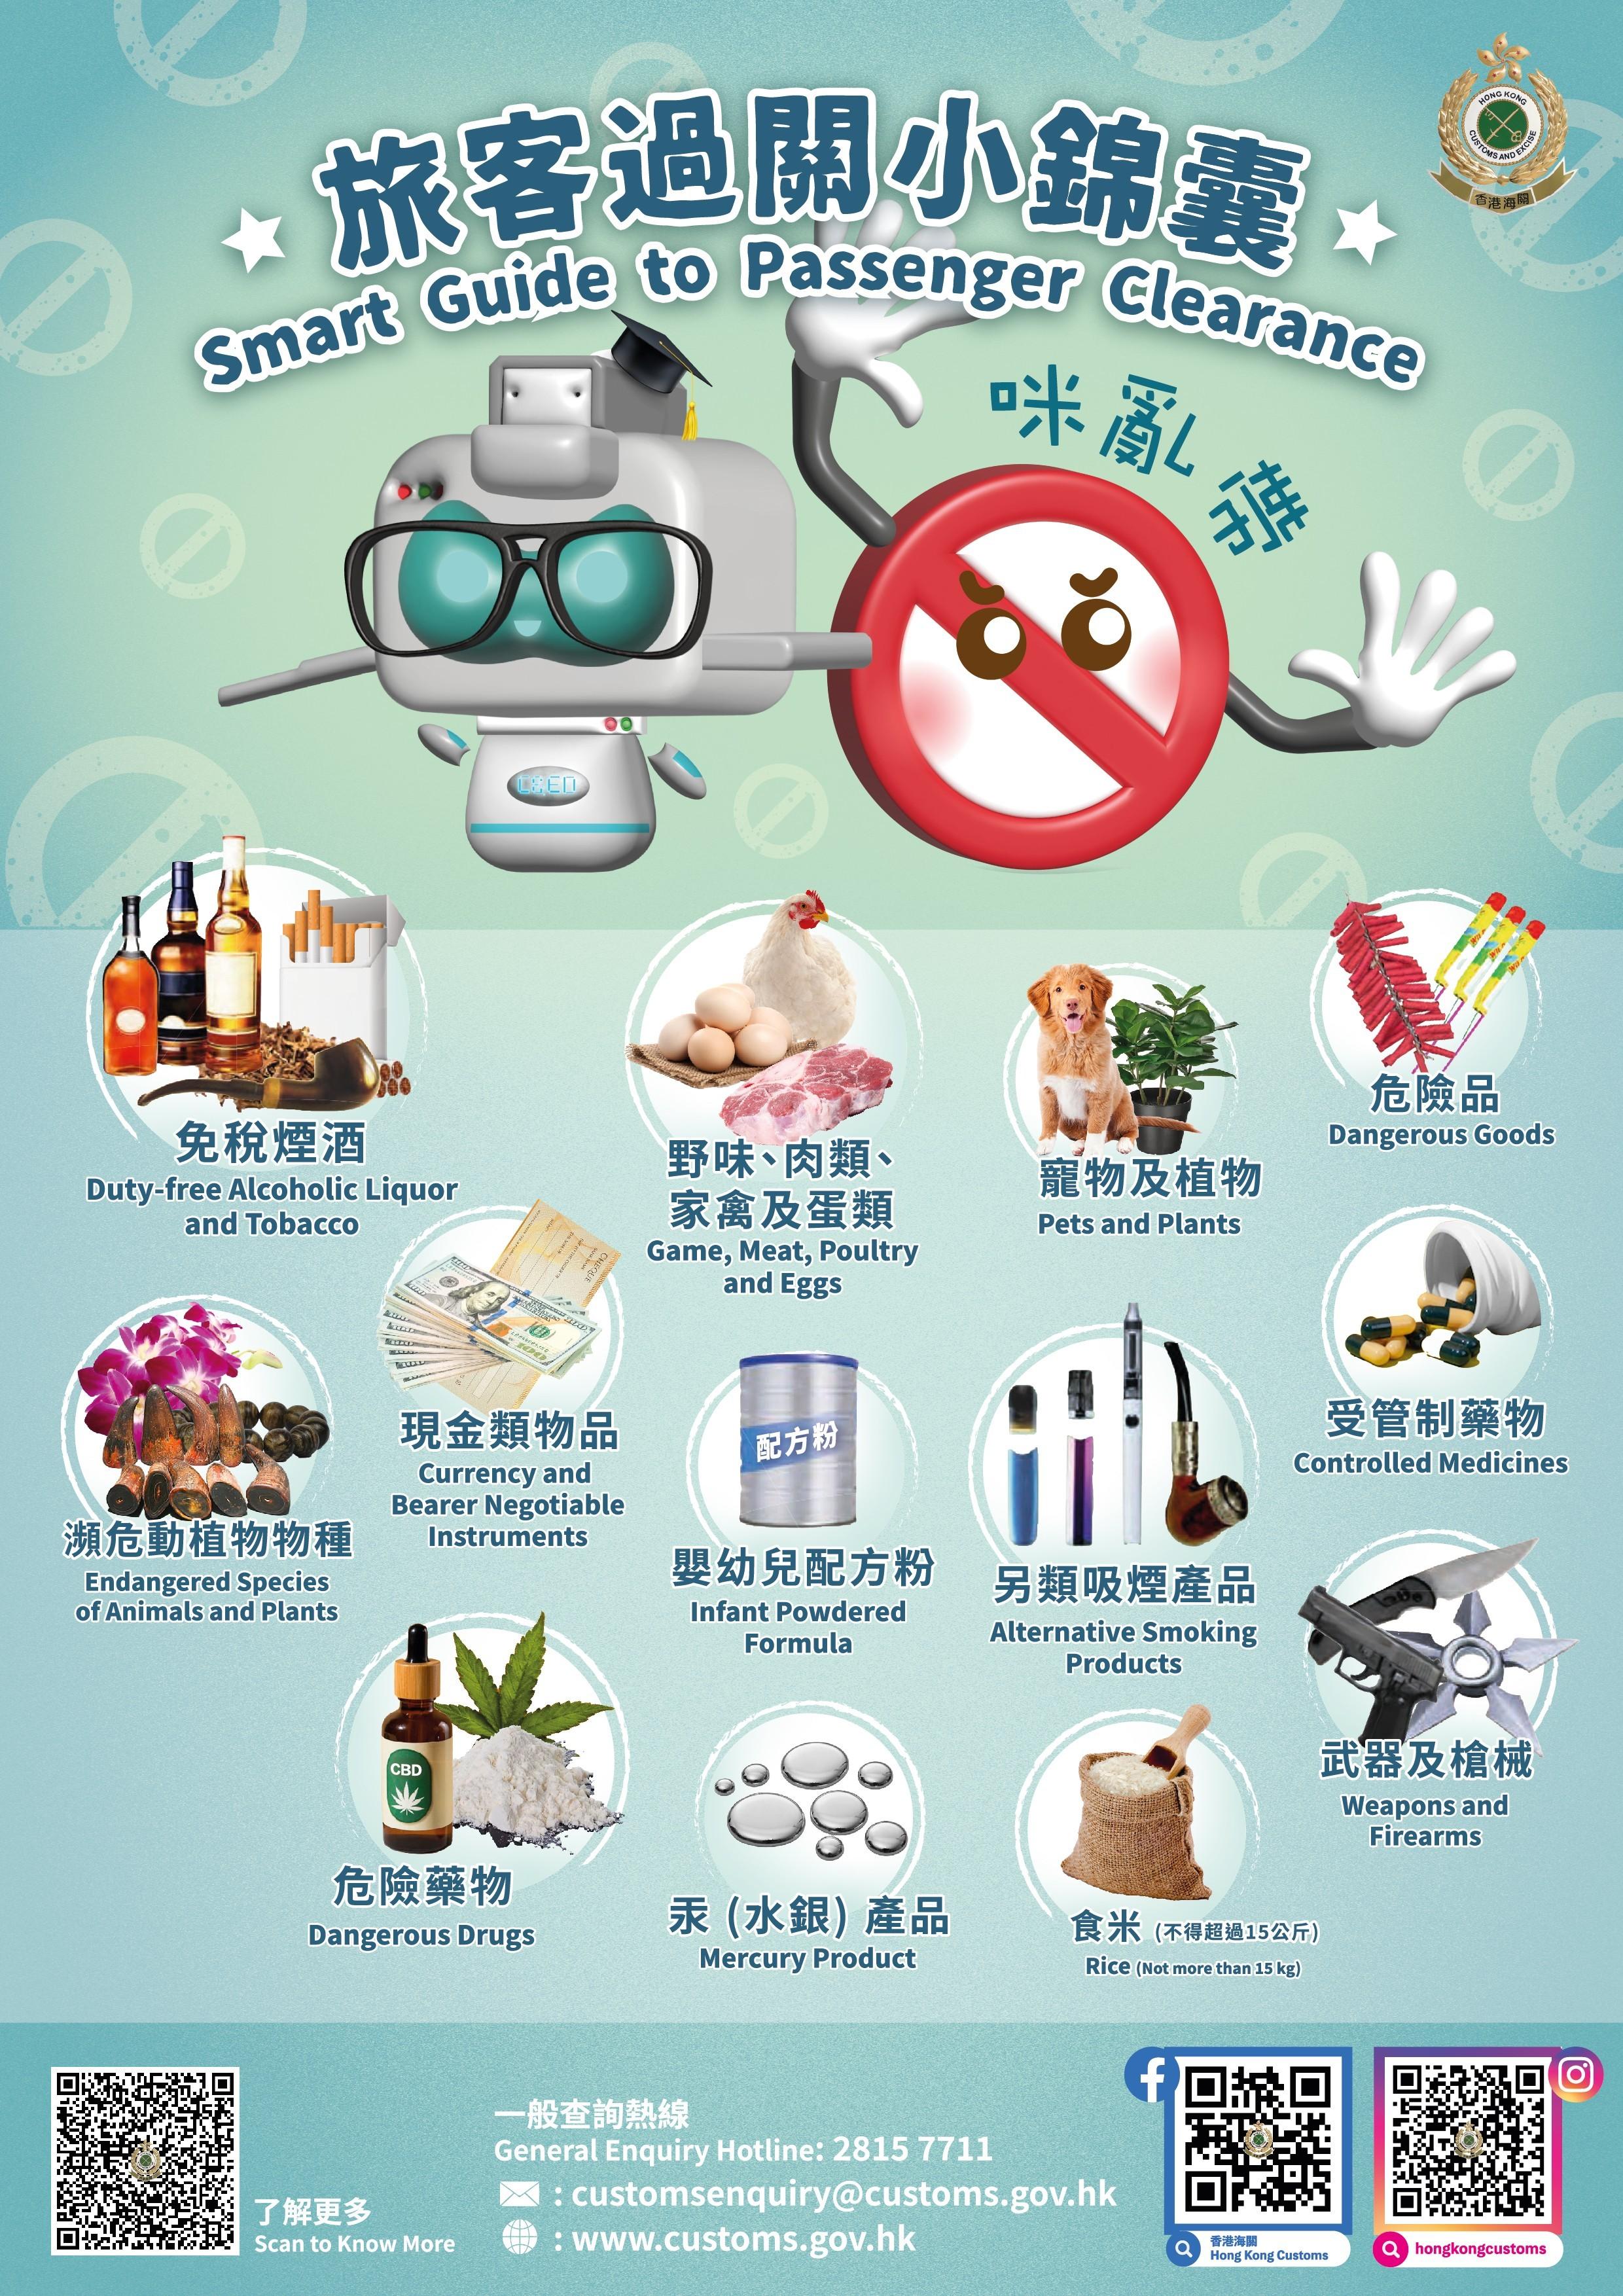 香港海關在社交平台專頁和微信公眾號發放「旅客過關小錦囊」，提醒市民及旅客須留意切勿攜帶違禁品及受管制物品進出香港。